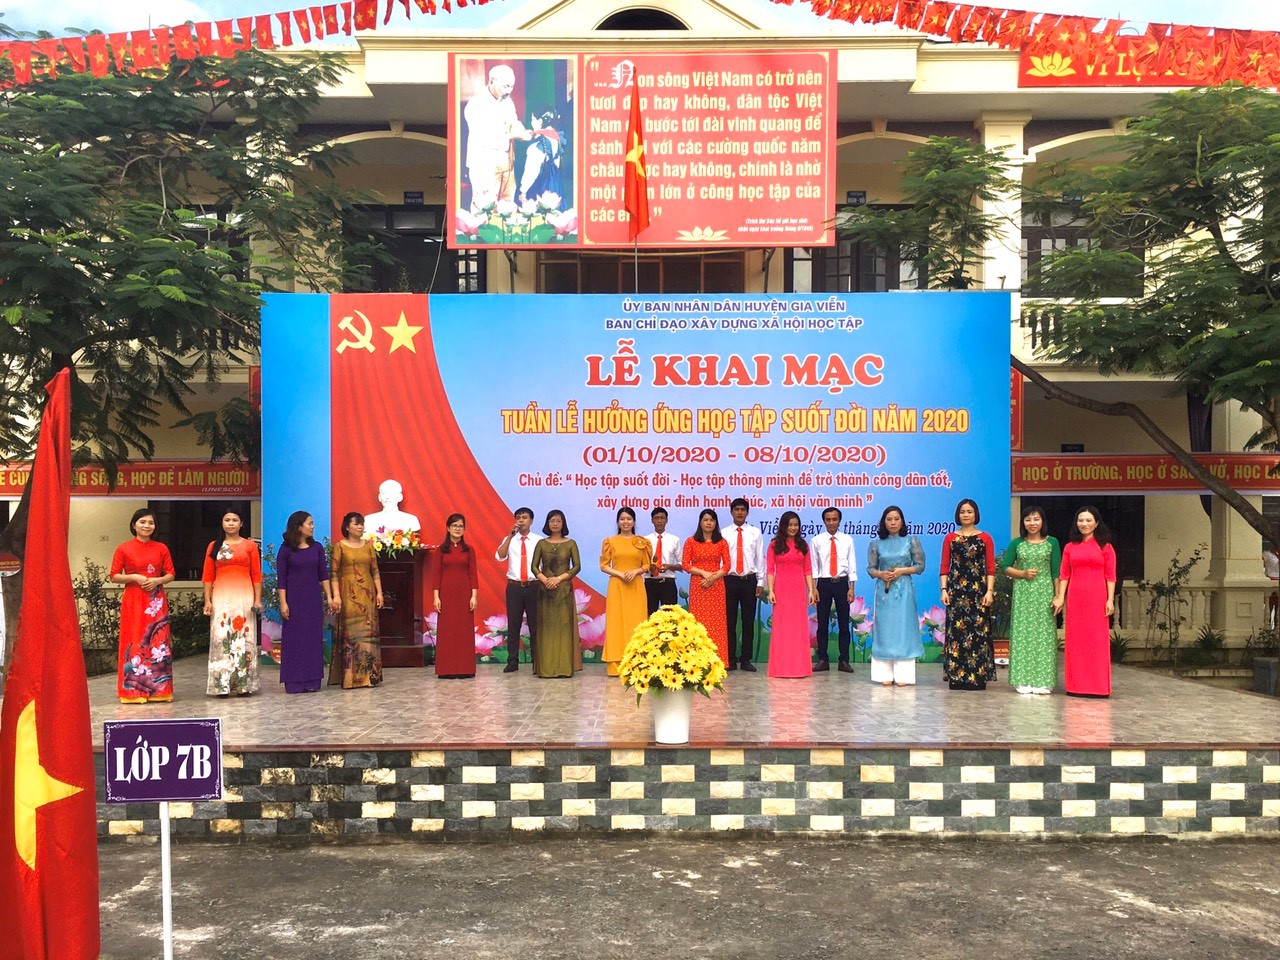 Thư viện tỉnh Ninh Bình tổ chức các hoạt động  “Tuần lễ hưởng ứng học tập suốt đời” năm 2020